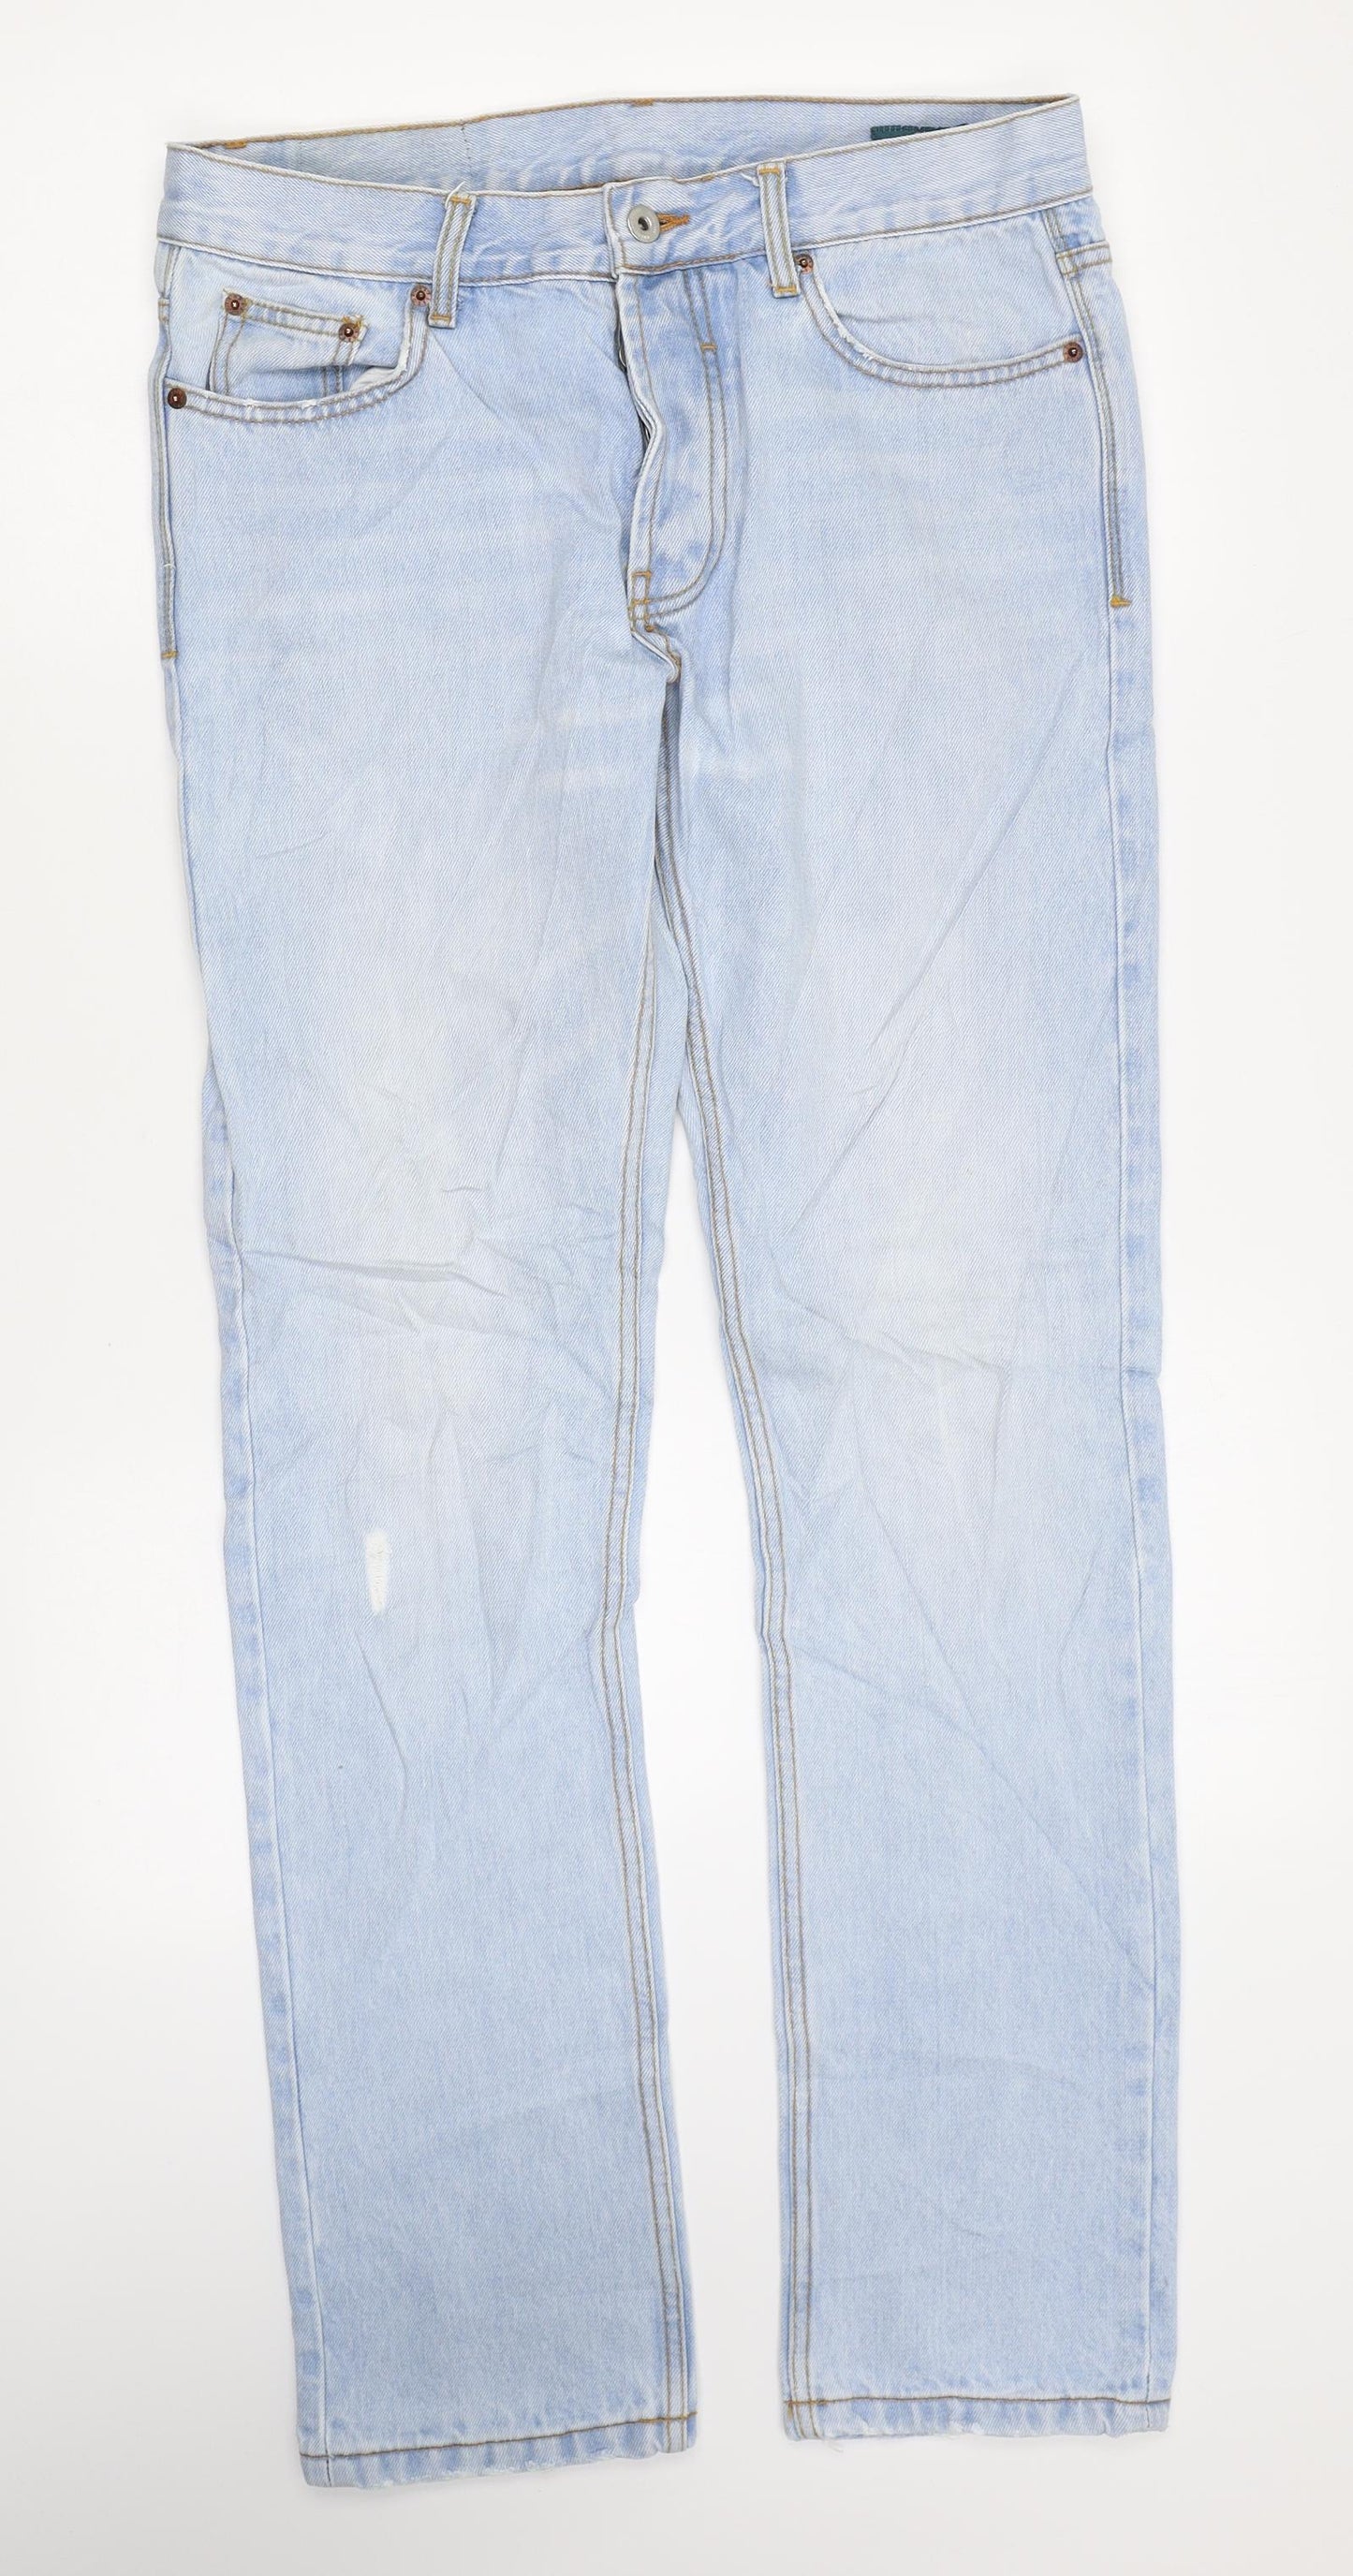 Bellfield Womens Blue Cotton Skinny Jeans Size 30 in L31 in Regular Zip